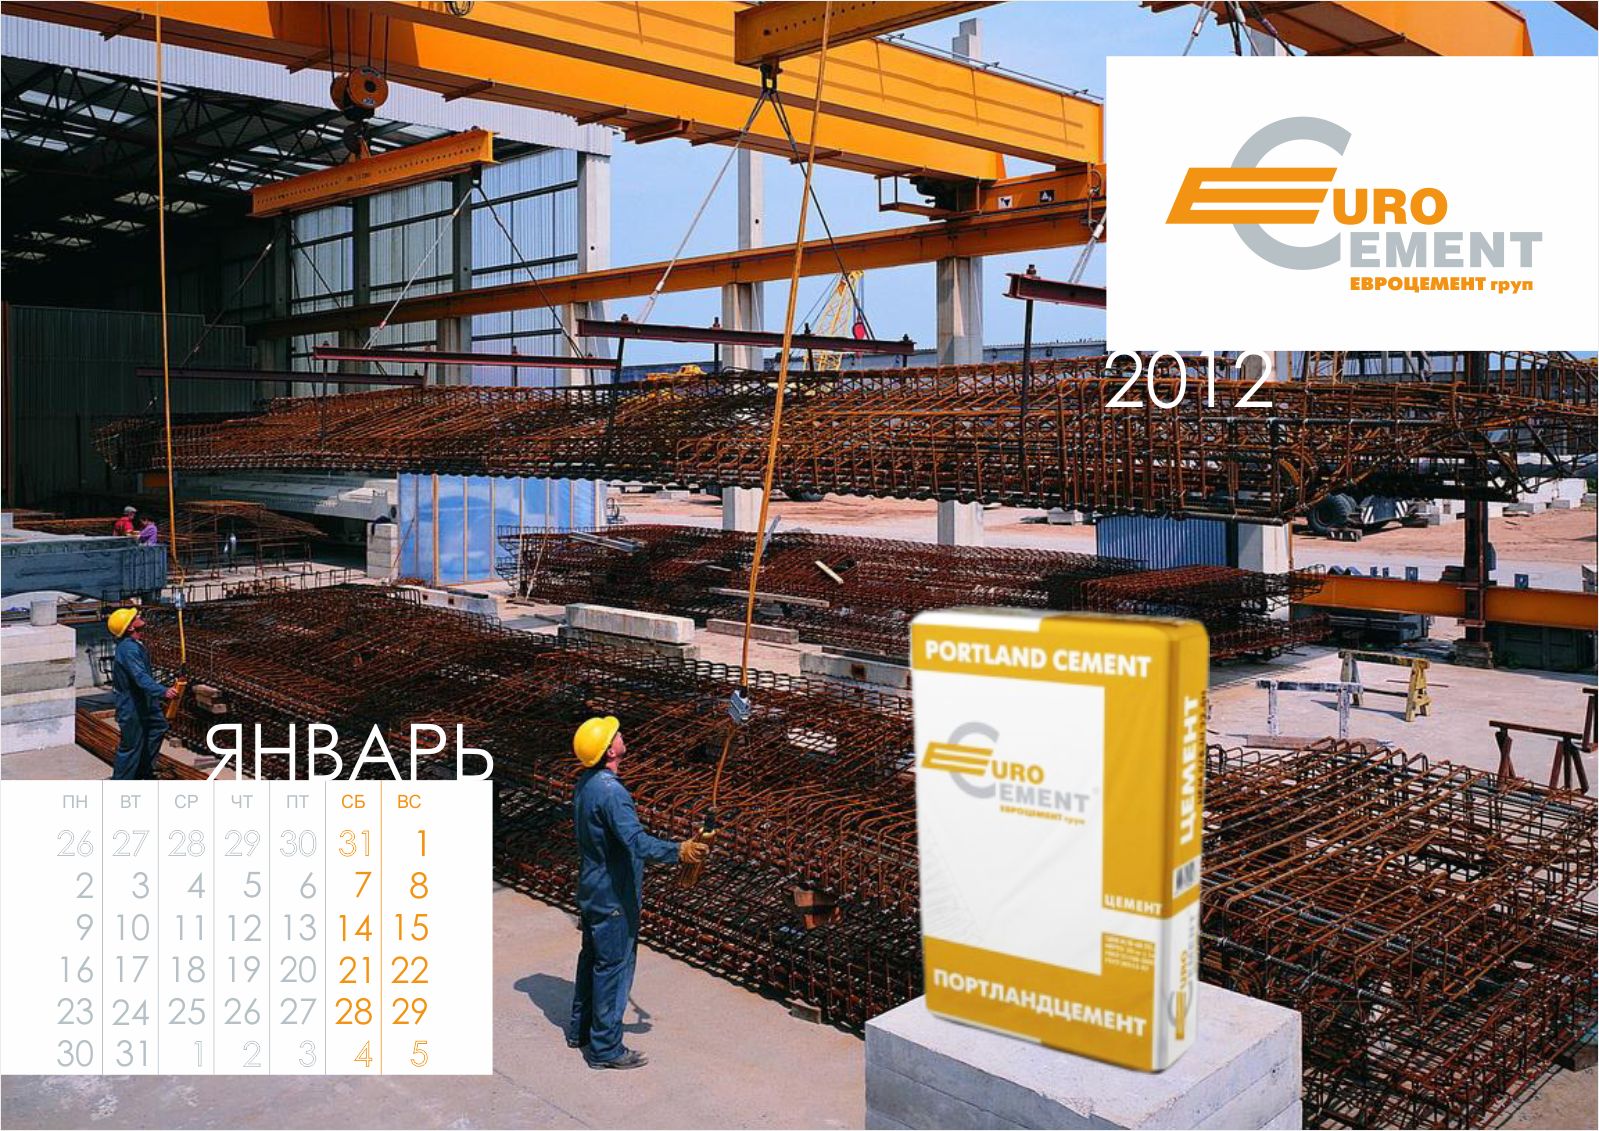 Календарь «Евроцемент груп 2012»